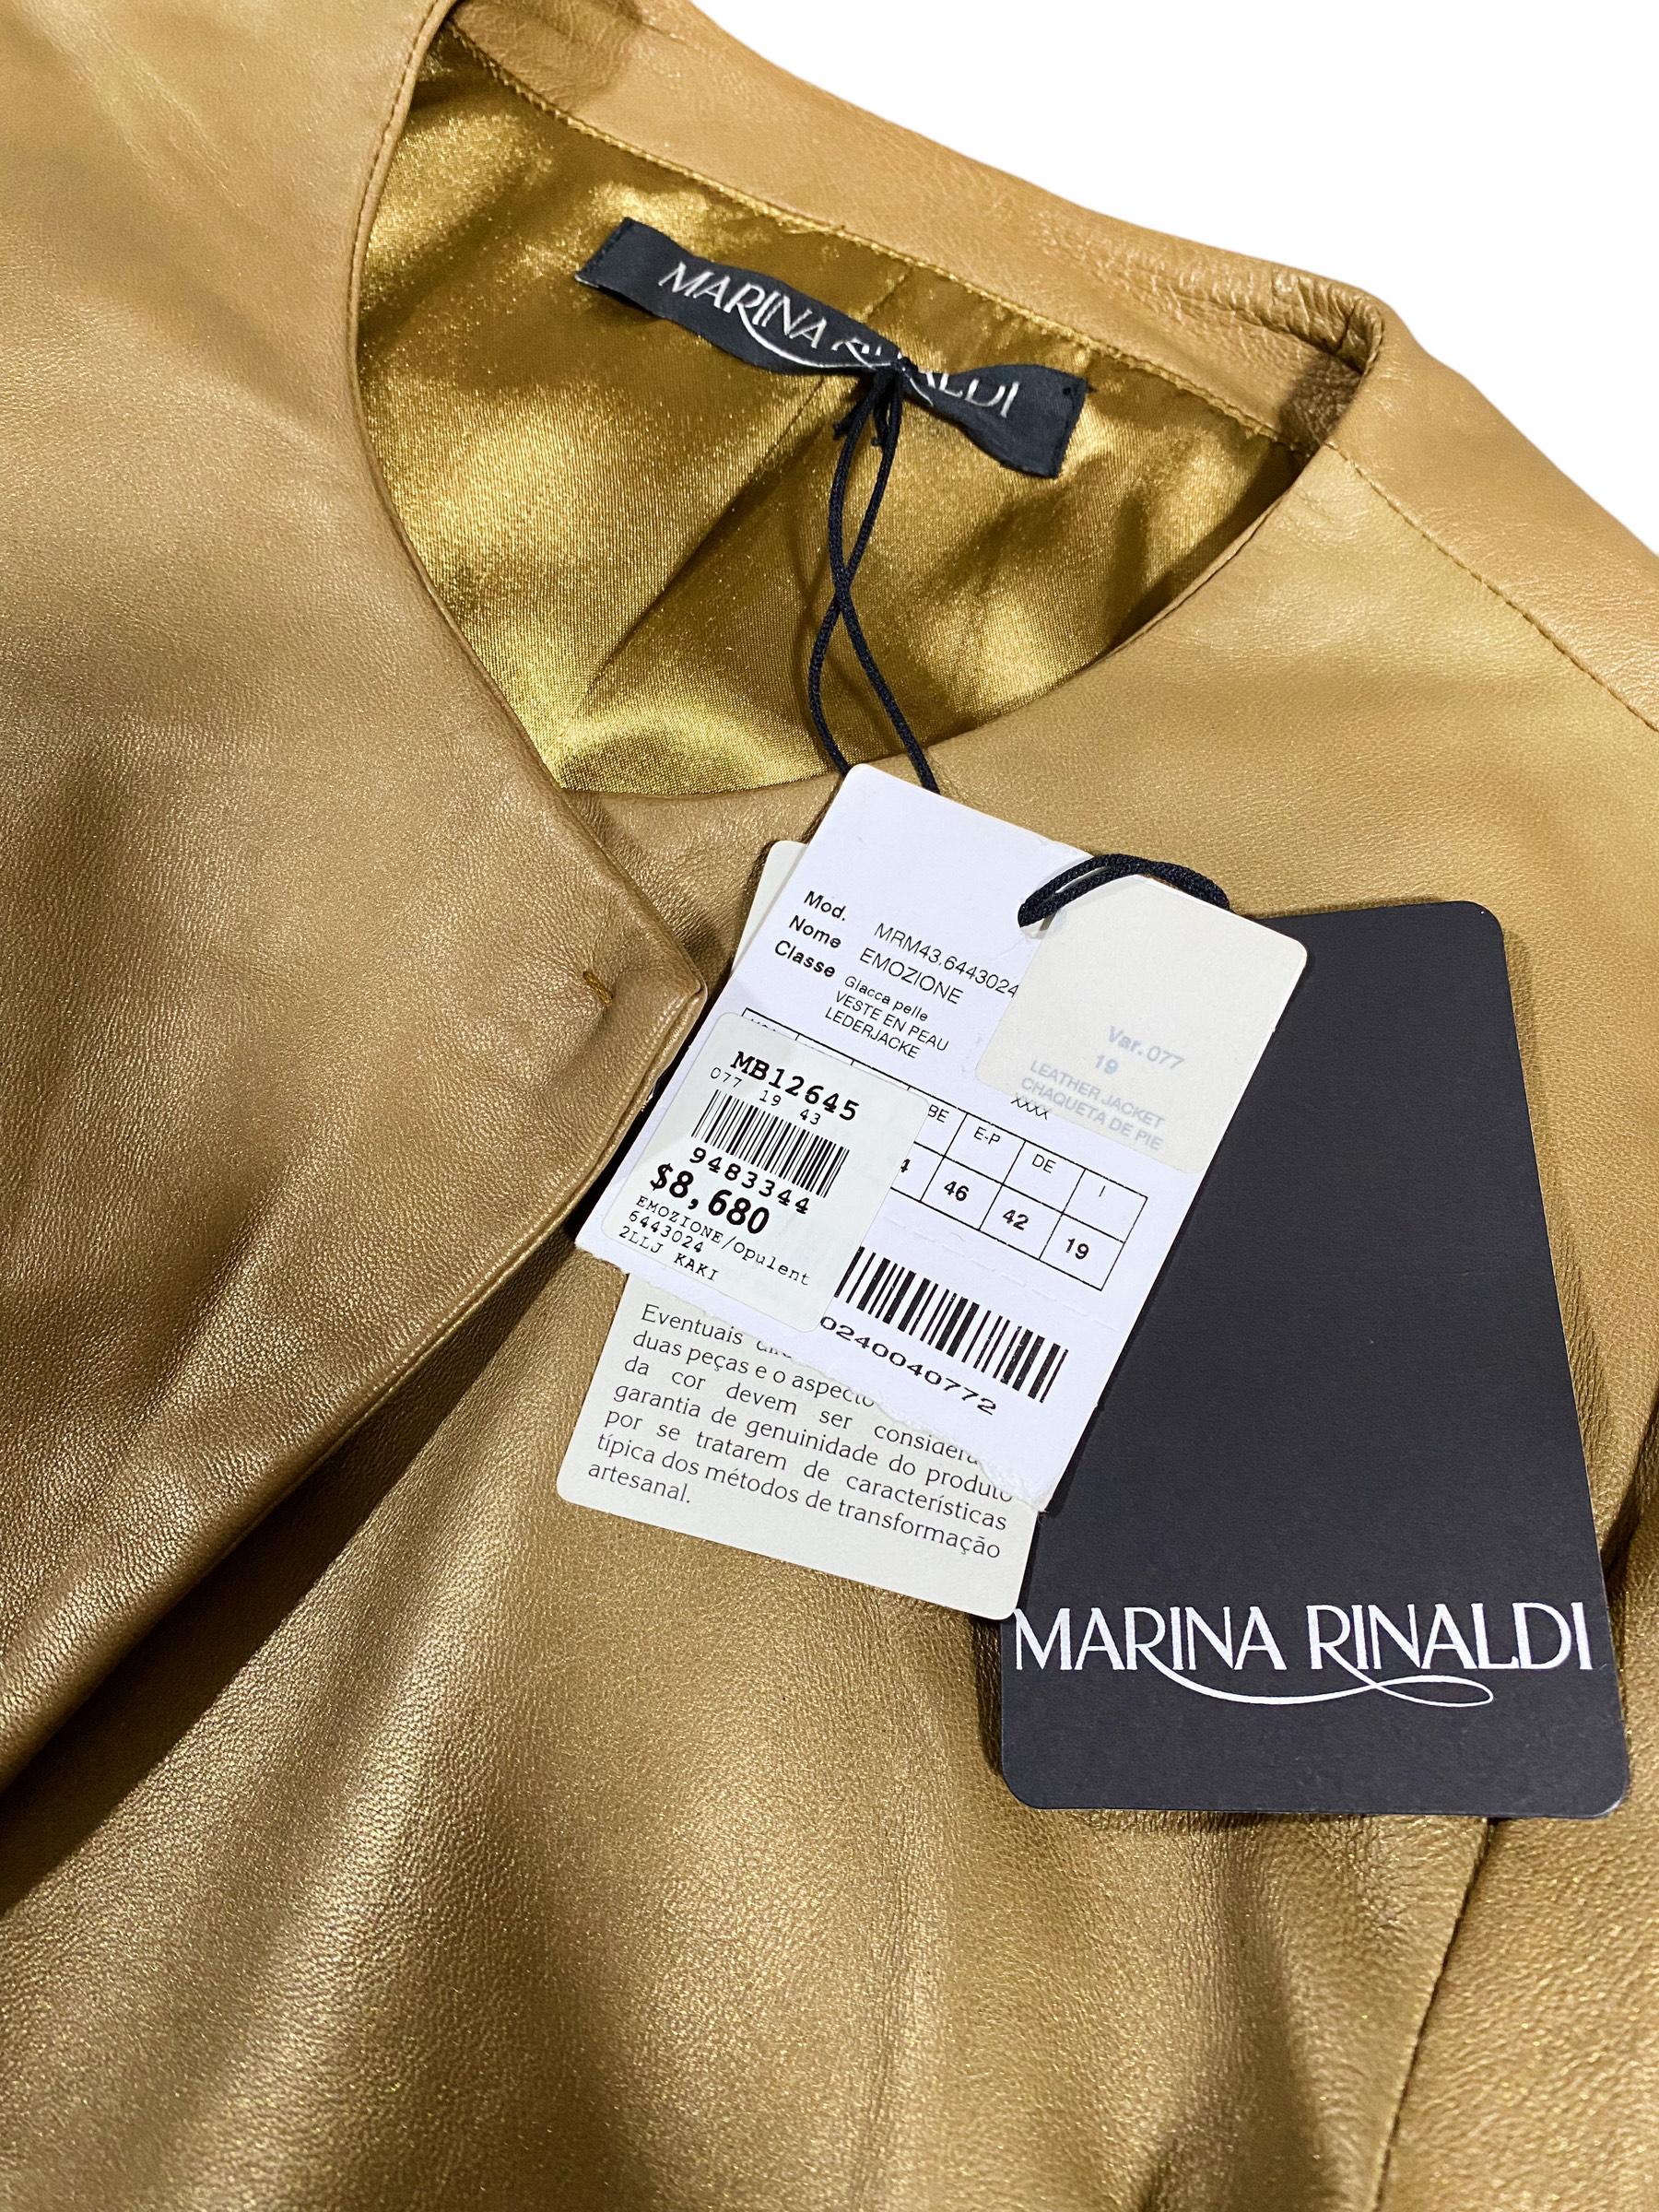 Marina Rinaldi x Max Mara Echte Lederjacke aus echtem Leder - limitierte Auflage im Angebot 2